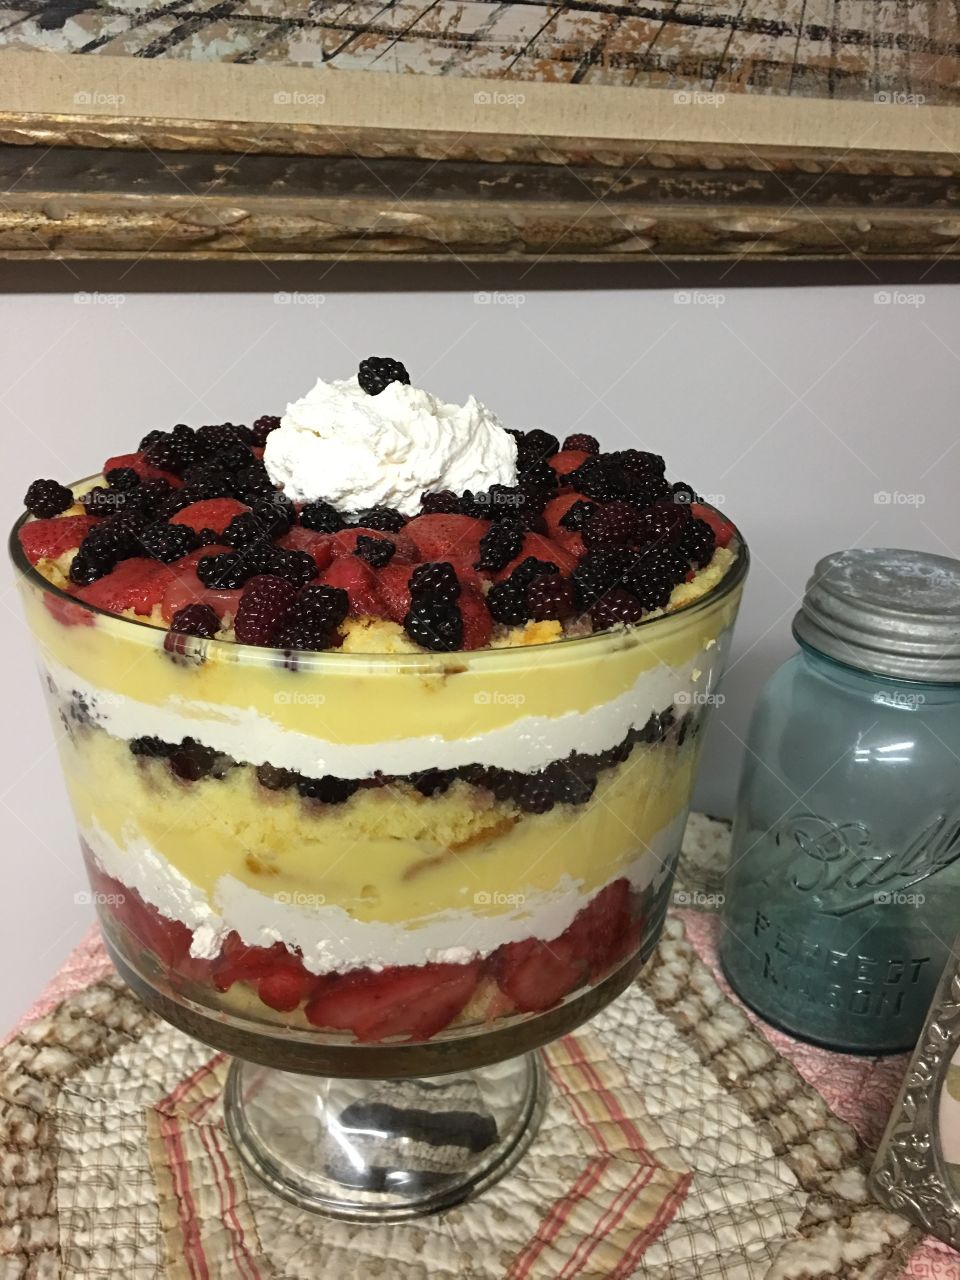 Tammy's Trifle